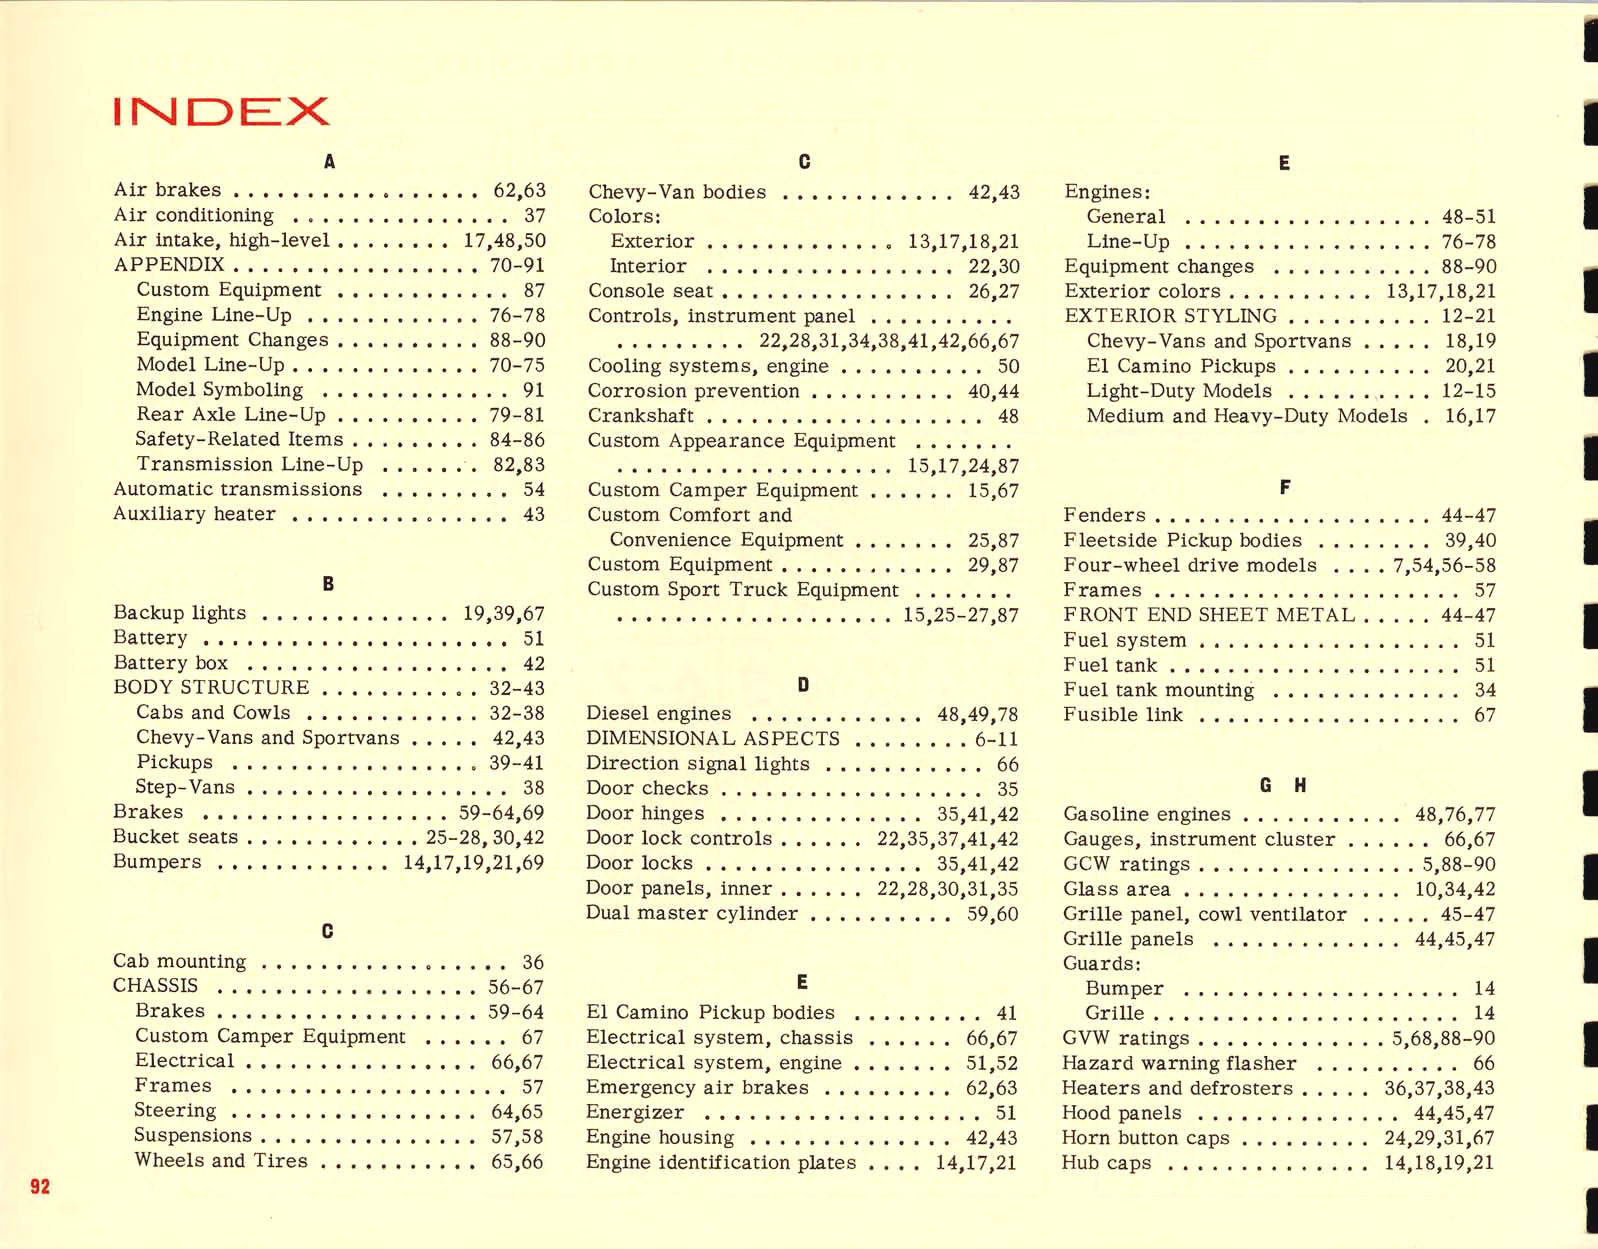 1967_Chevrolet_Truck_Engineering_Features-92